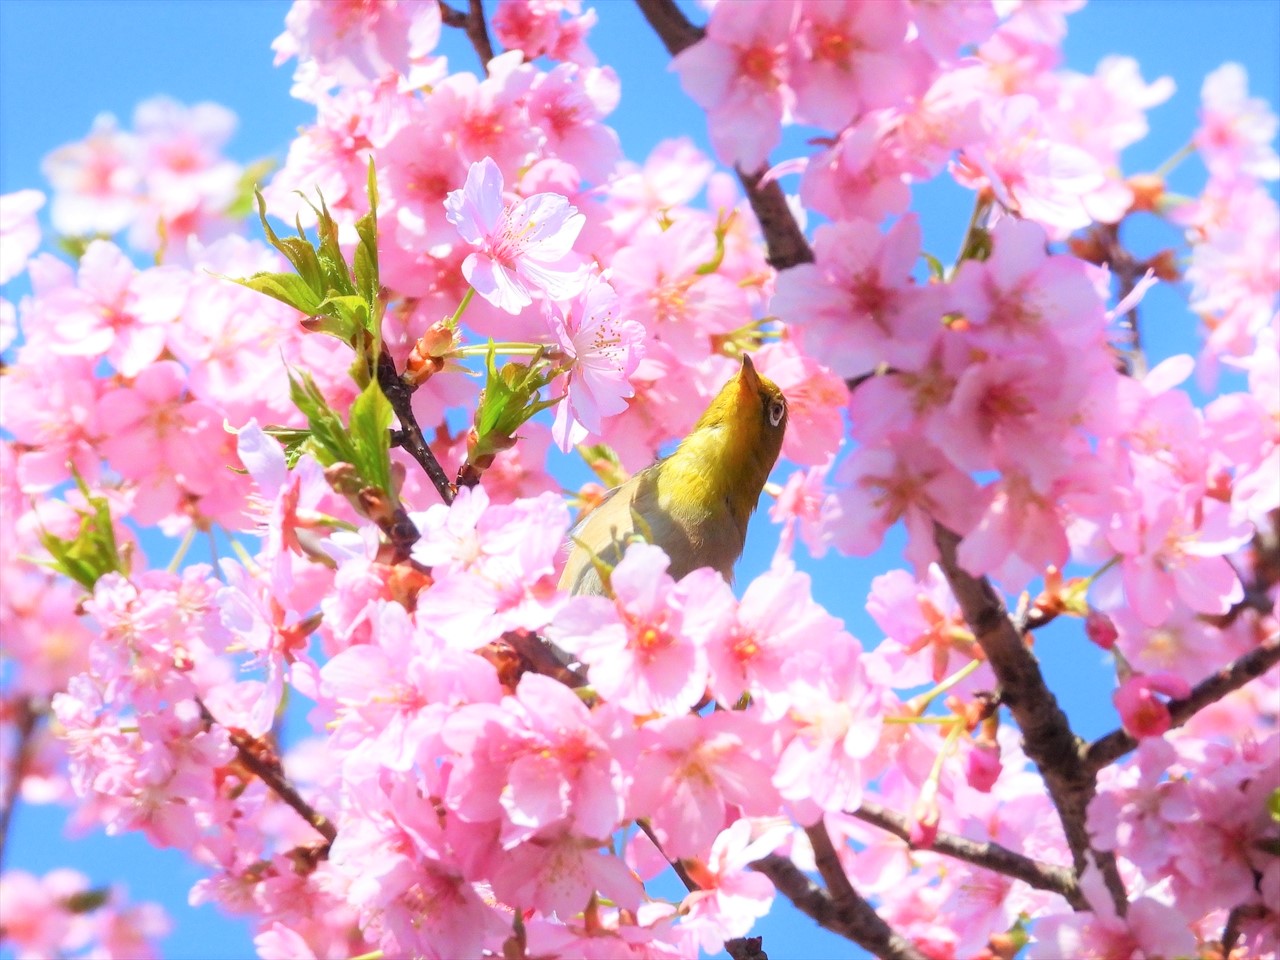 DSCN5270 (2)緋寒桜にメジロ２０２２年３月１５日AM９：５８